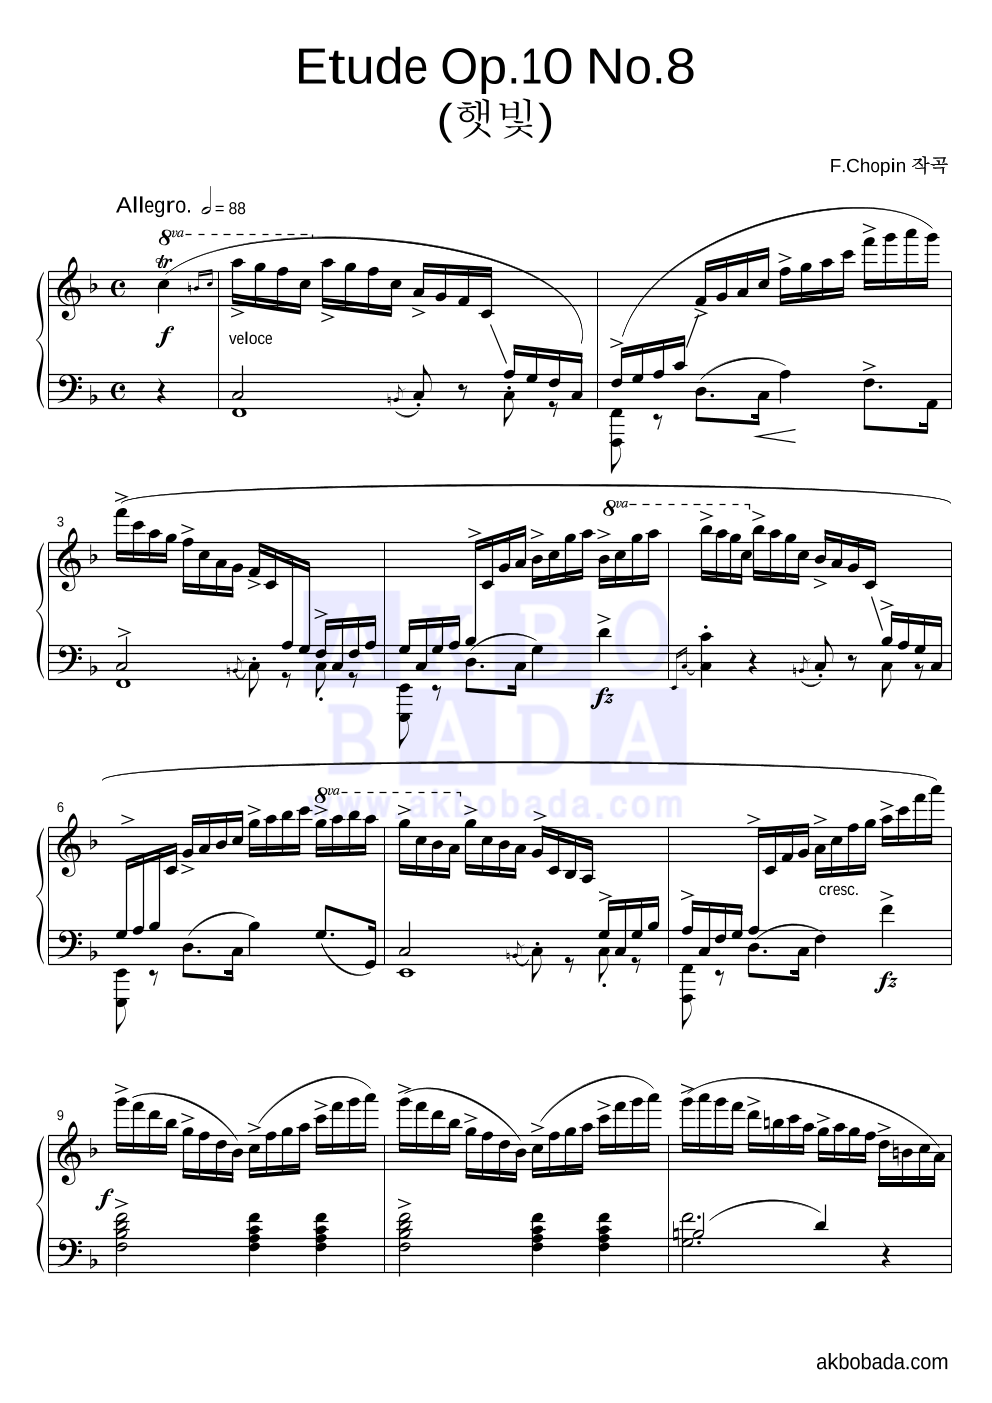 쇼팽 - Etude Op.10 No.8 (햇빛) 피아노 2단 악보 